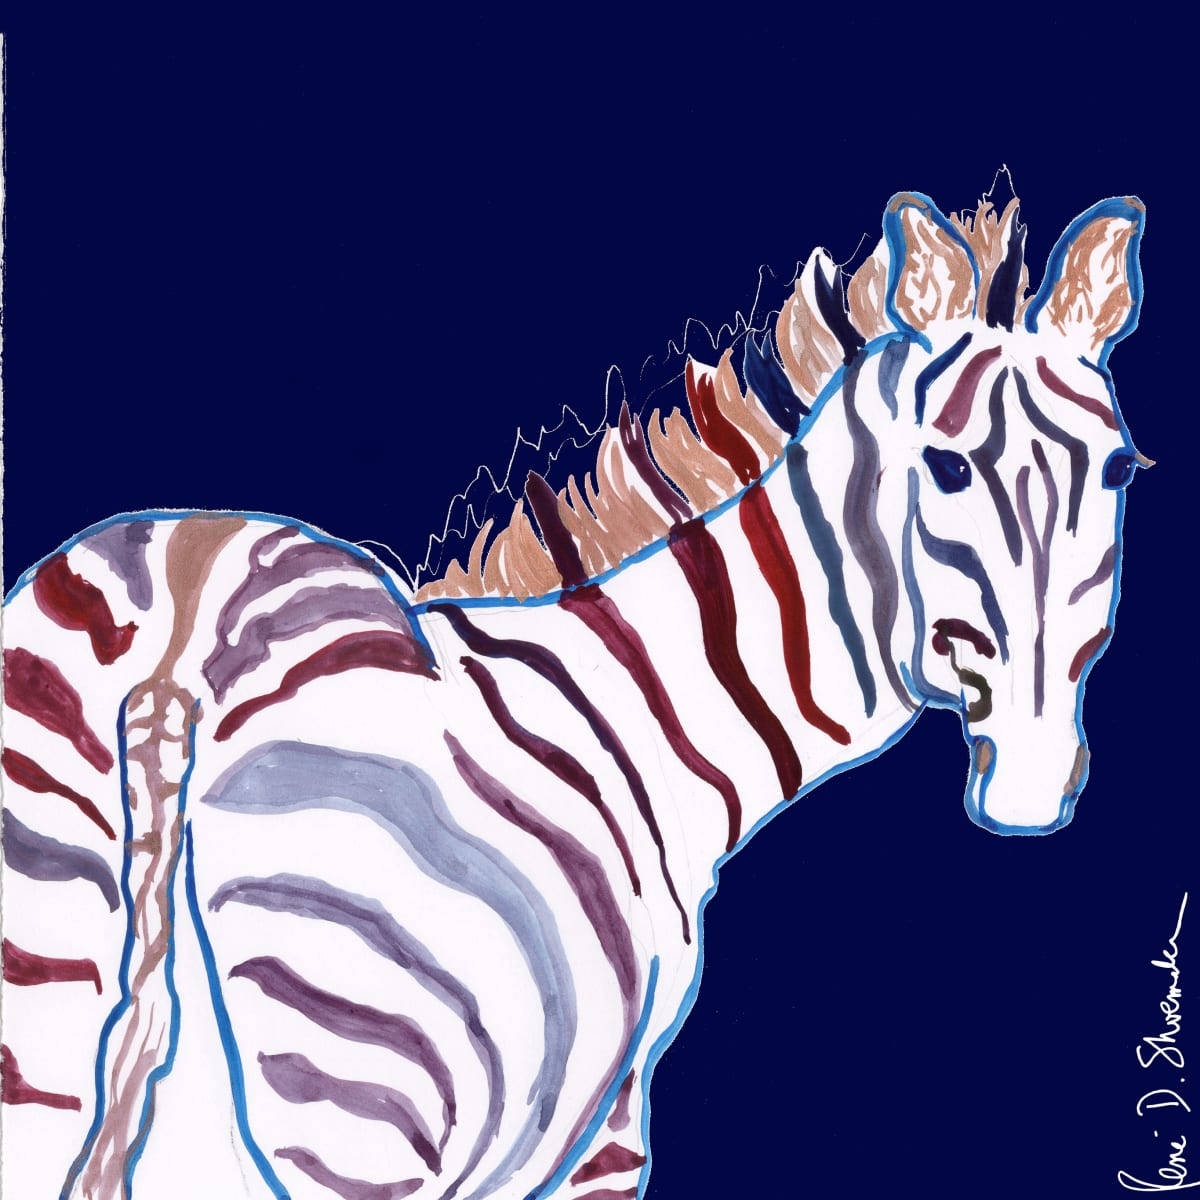 Zebra Will Dazzle by René D. Shoemaker  Image: Zebra Will Dazzle